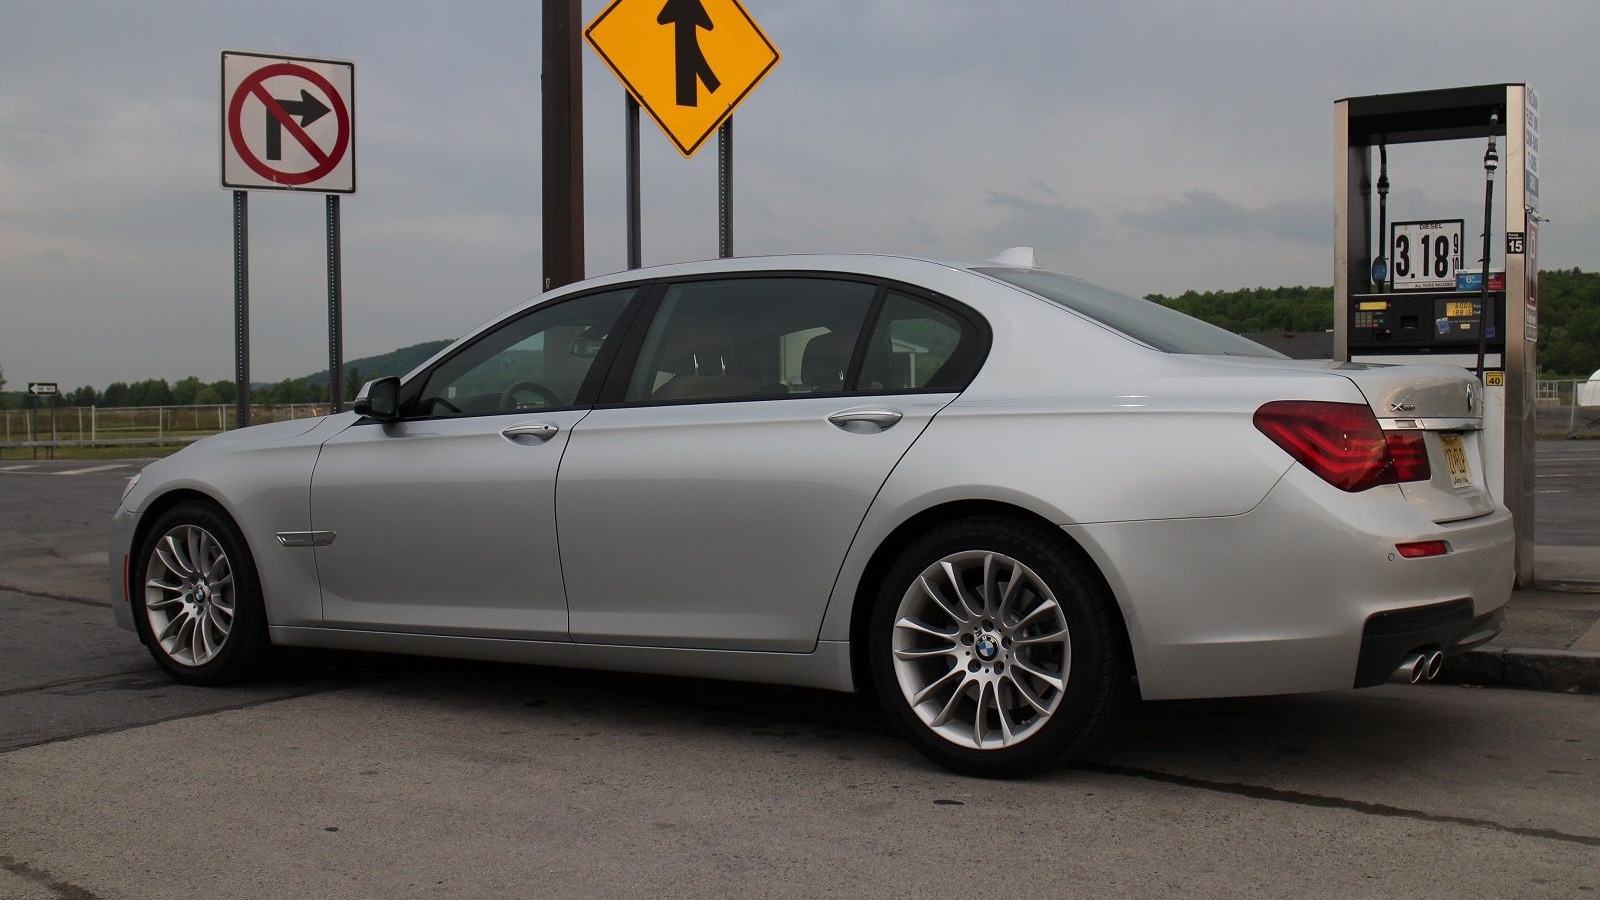 2015 BMW 740Ld xDrive, upstate New York, May 2015